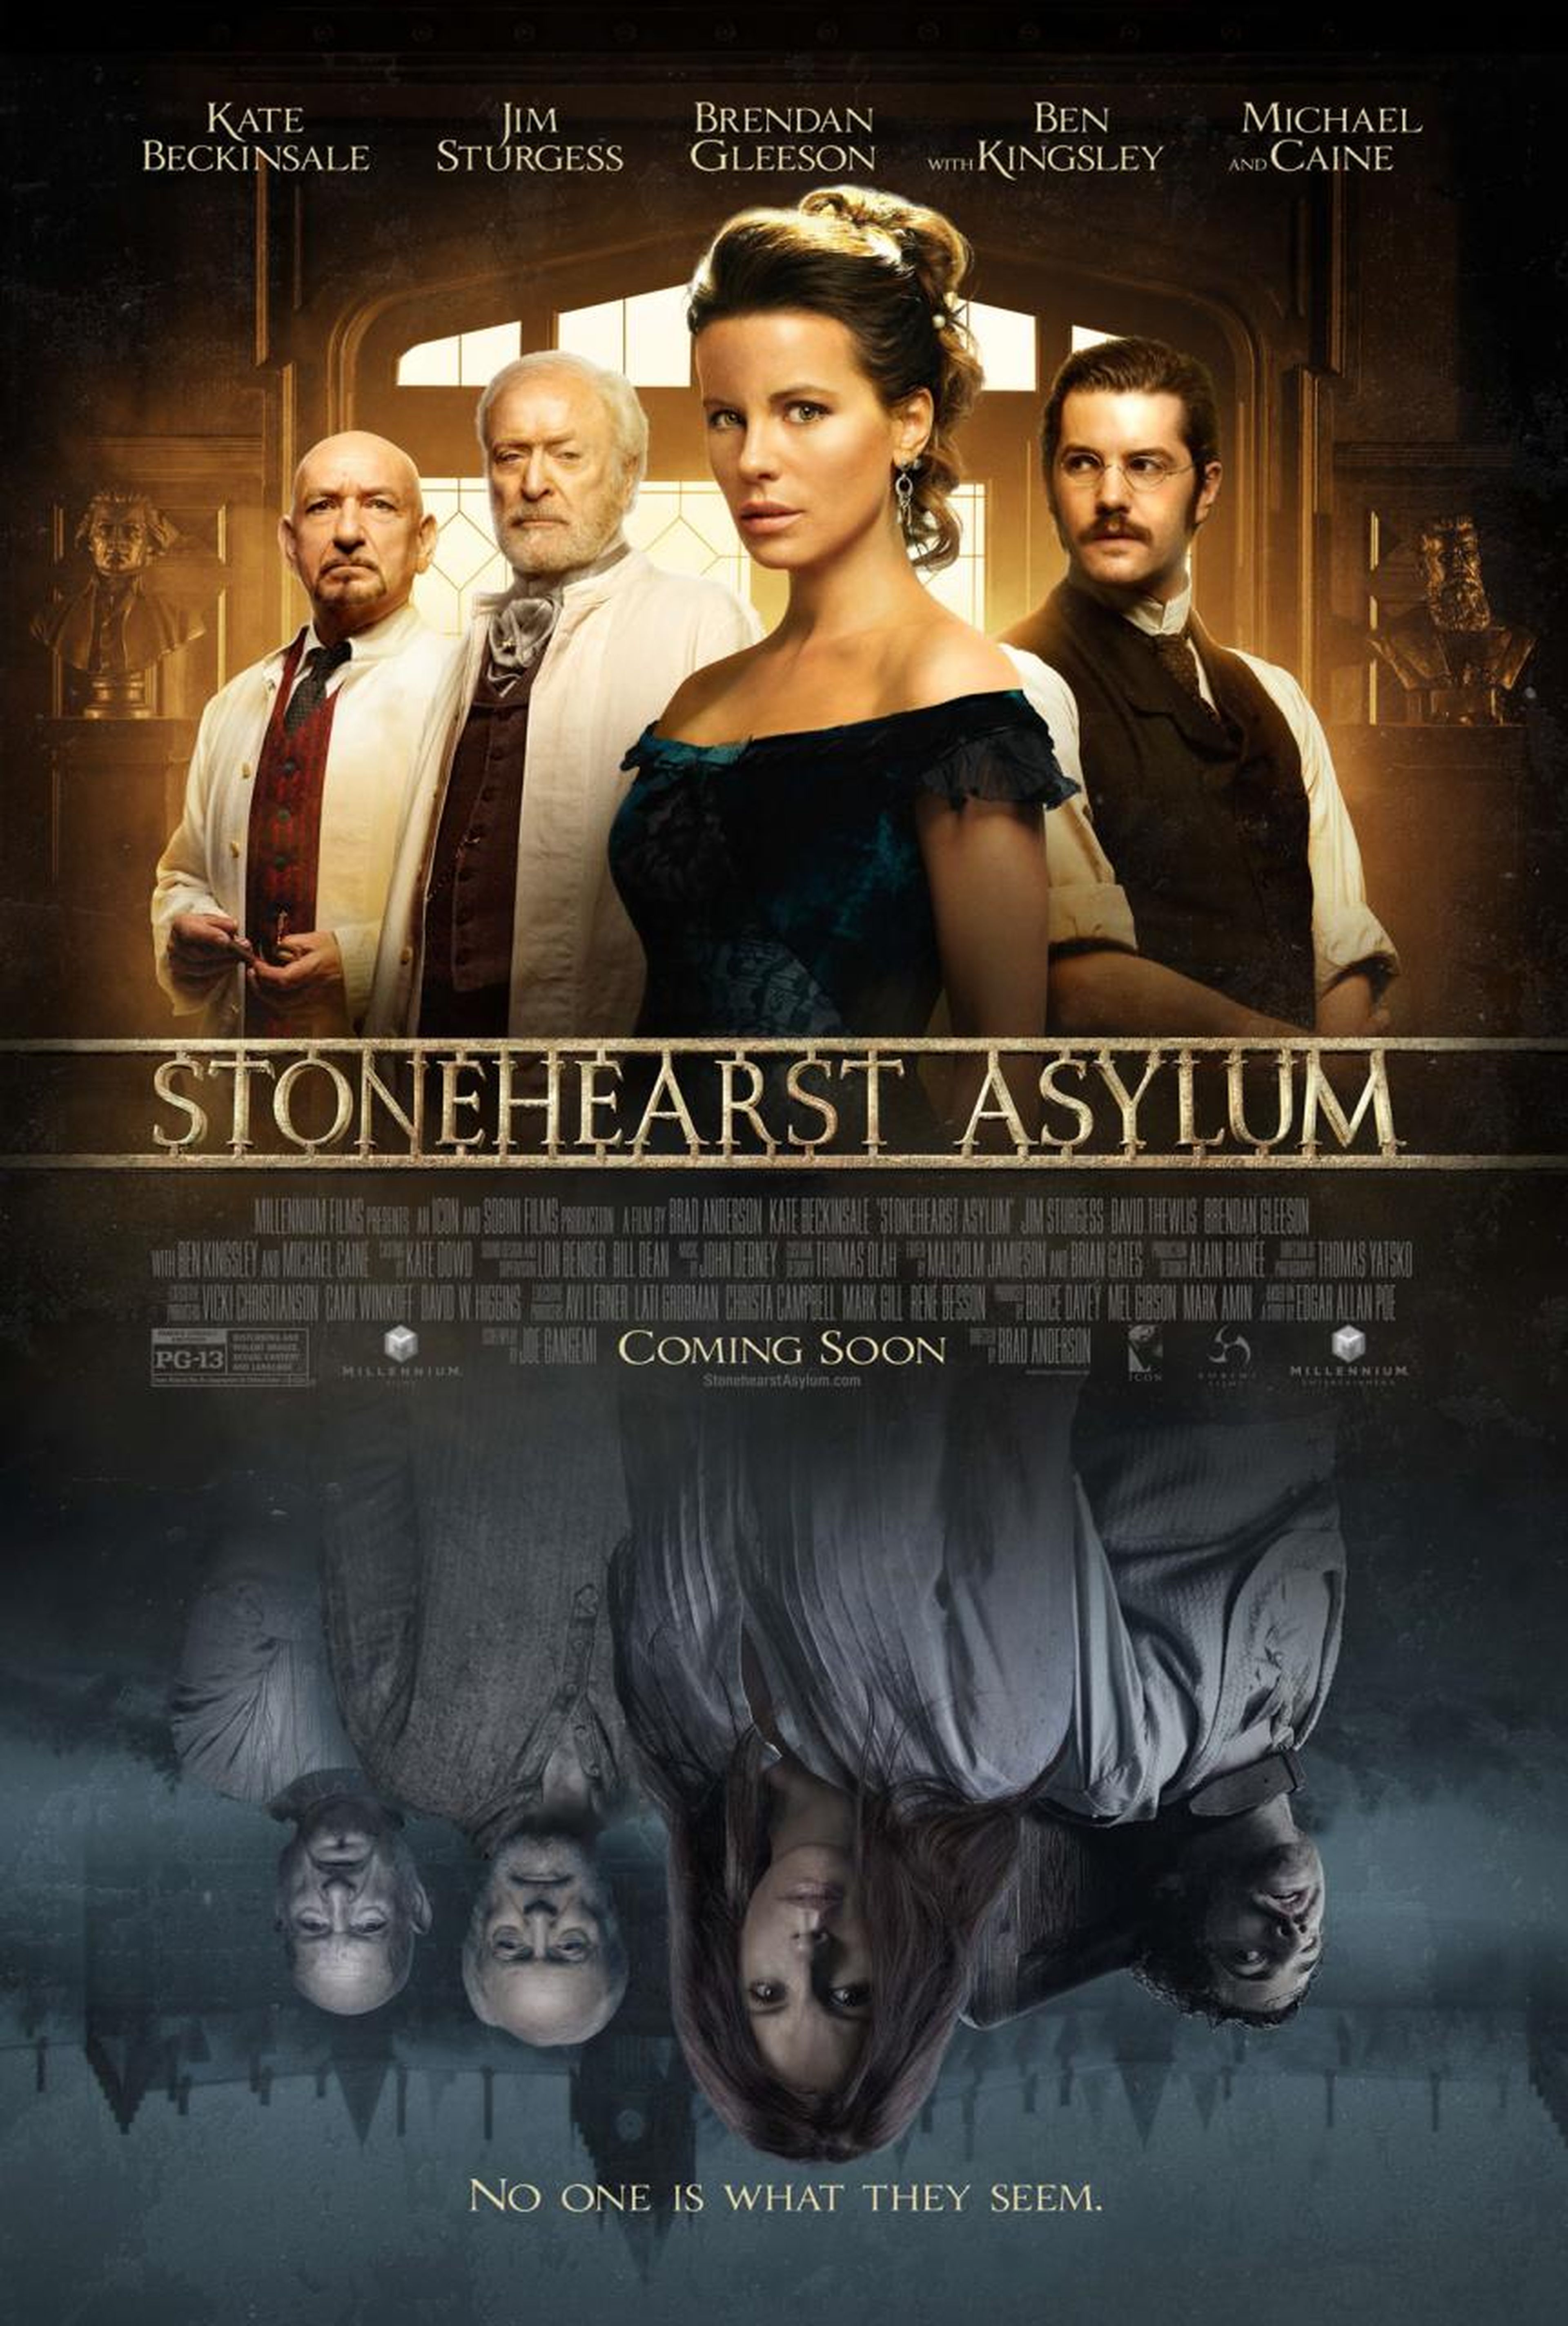 Stonehearst Asylum, basada en un cuento de Poe, ya tiene fecha de estreno